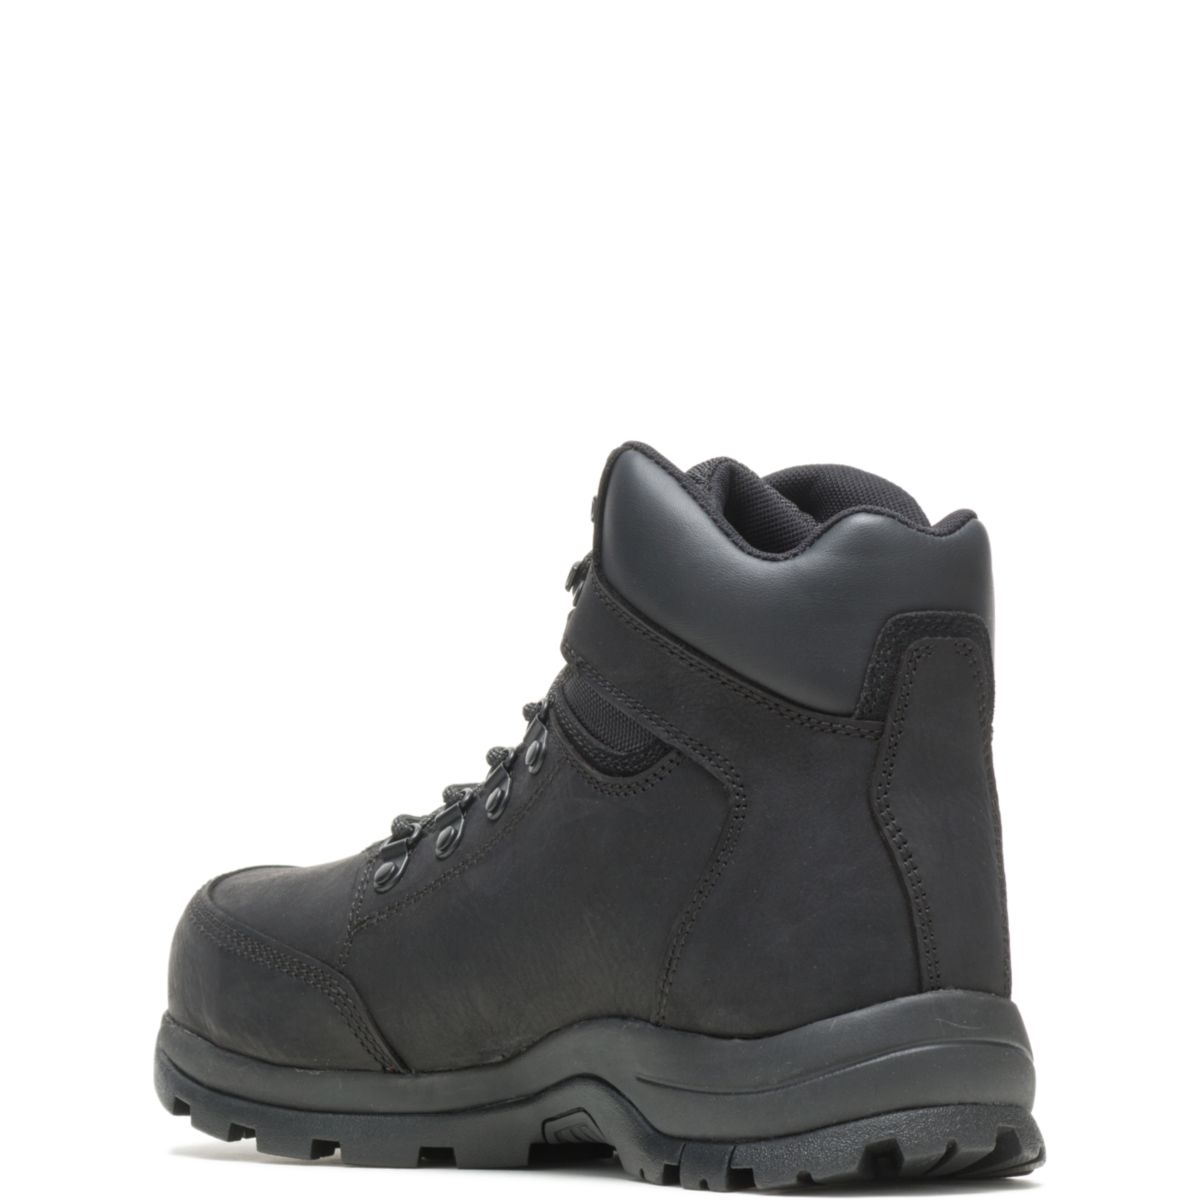 WOLVERINE Men's Grayson Steel Toe Waterproof Work Boot Black - W211042 BLACK - BLACK, 10